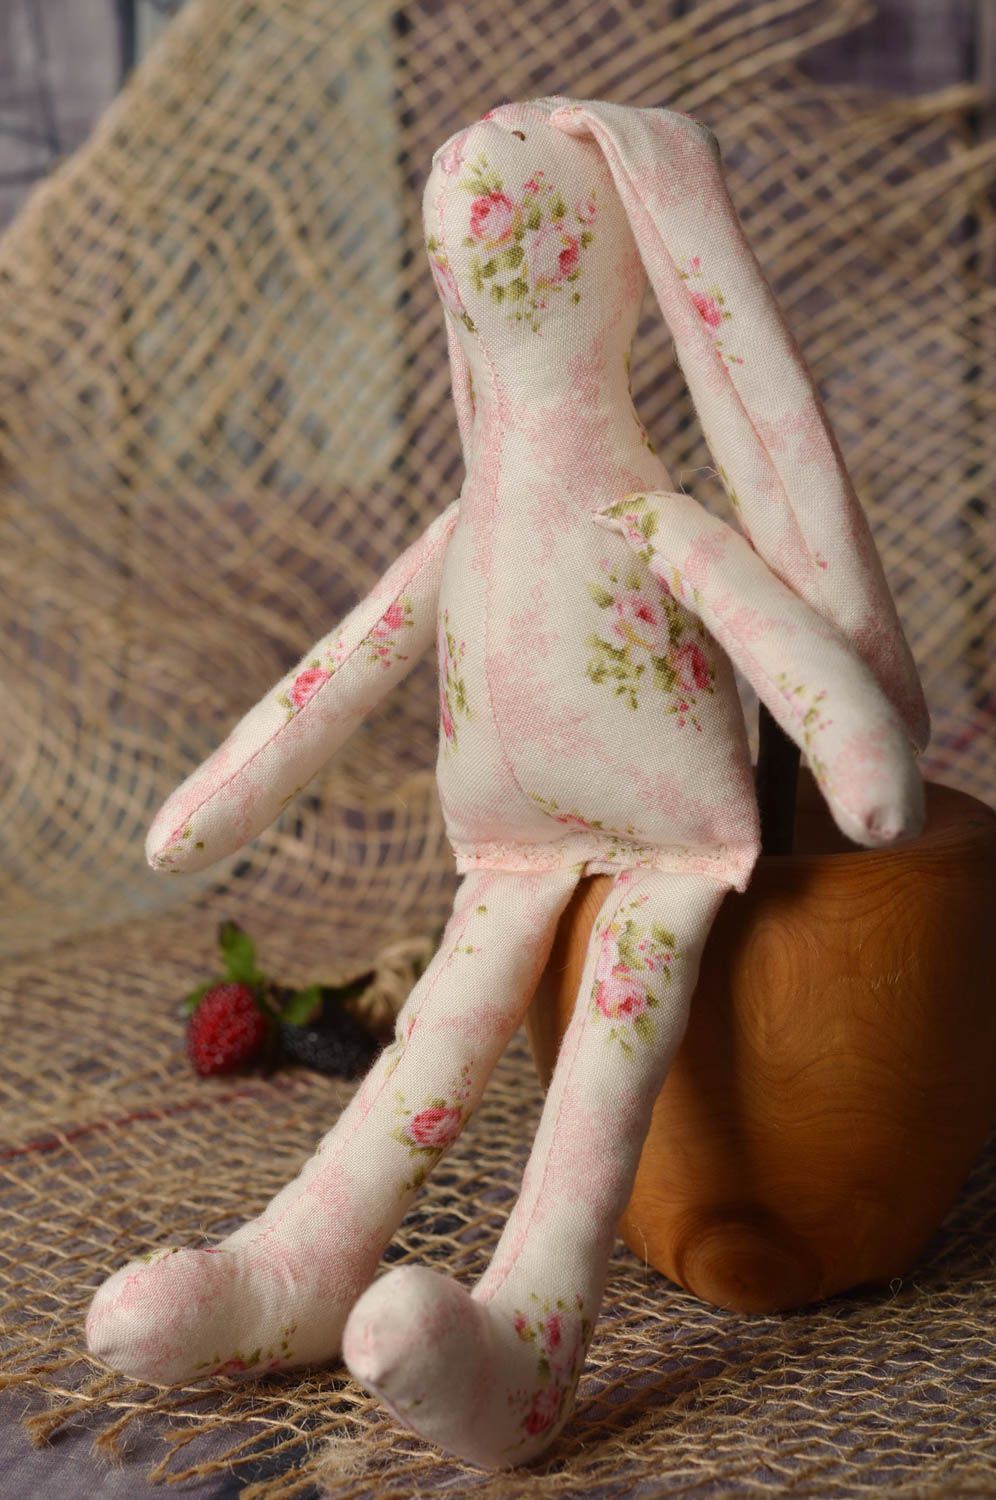 Игрушка заяц ручной работы авторская игрушка из ткани стильный подарок фото 1